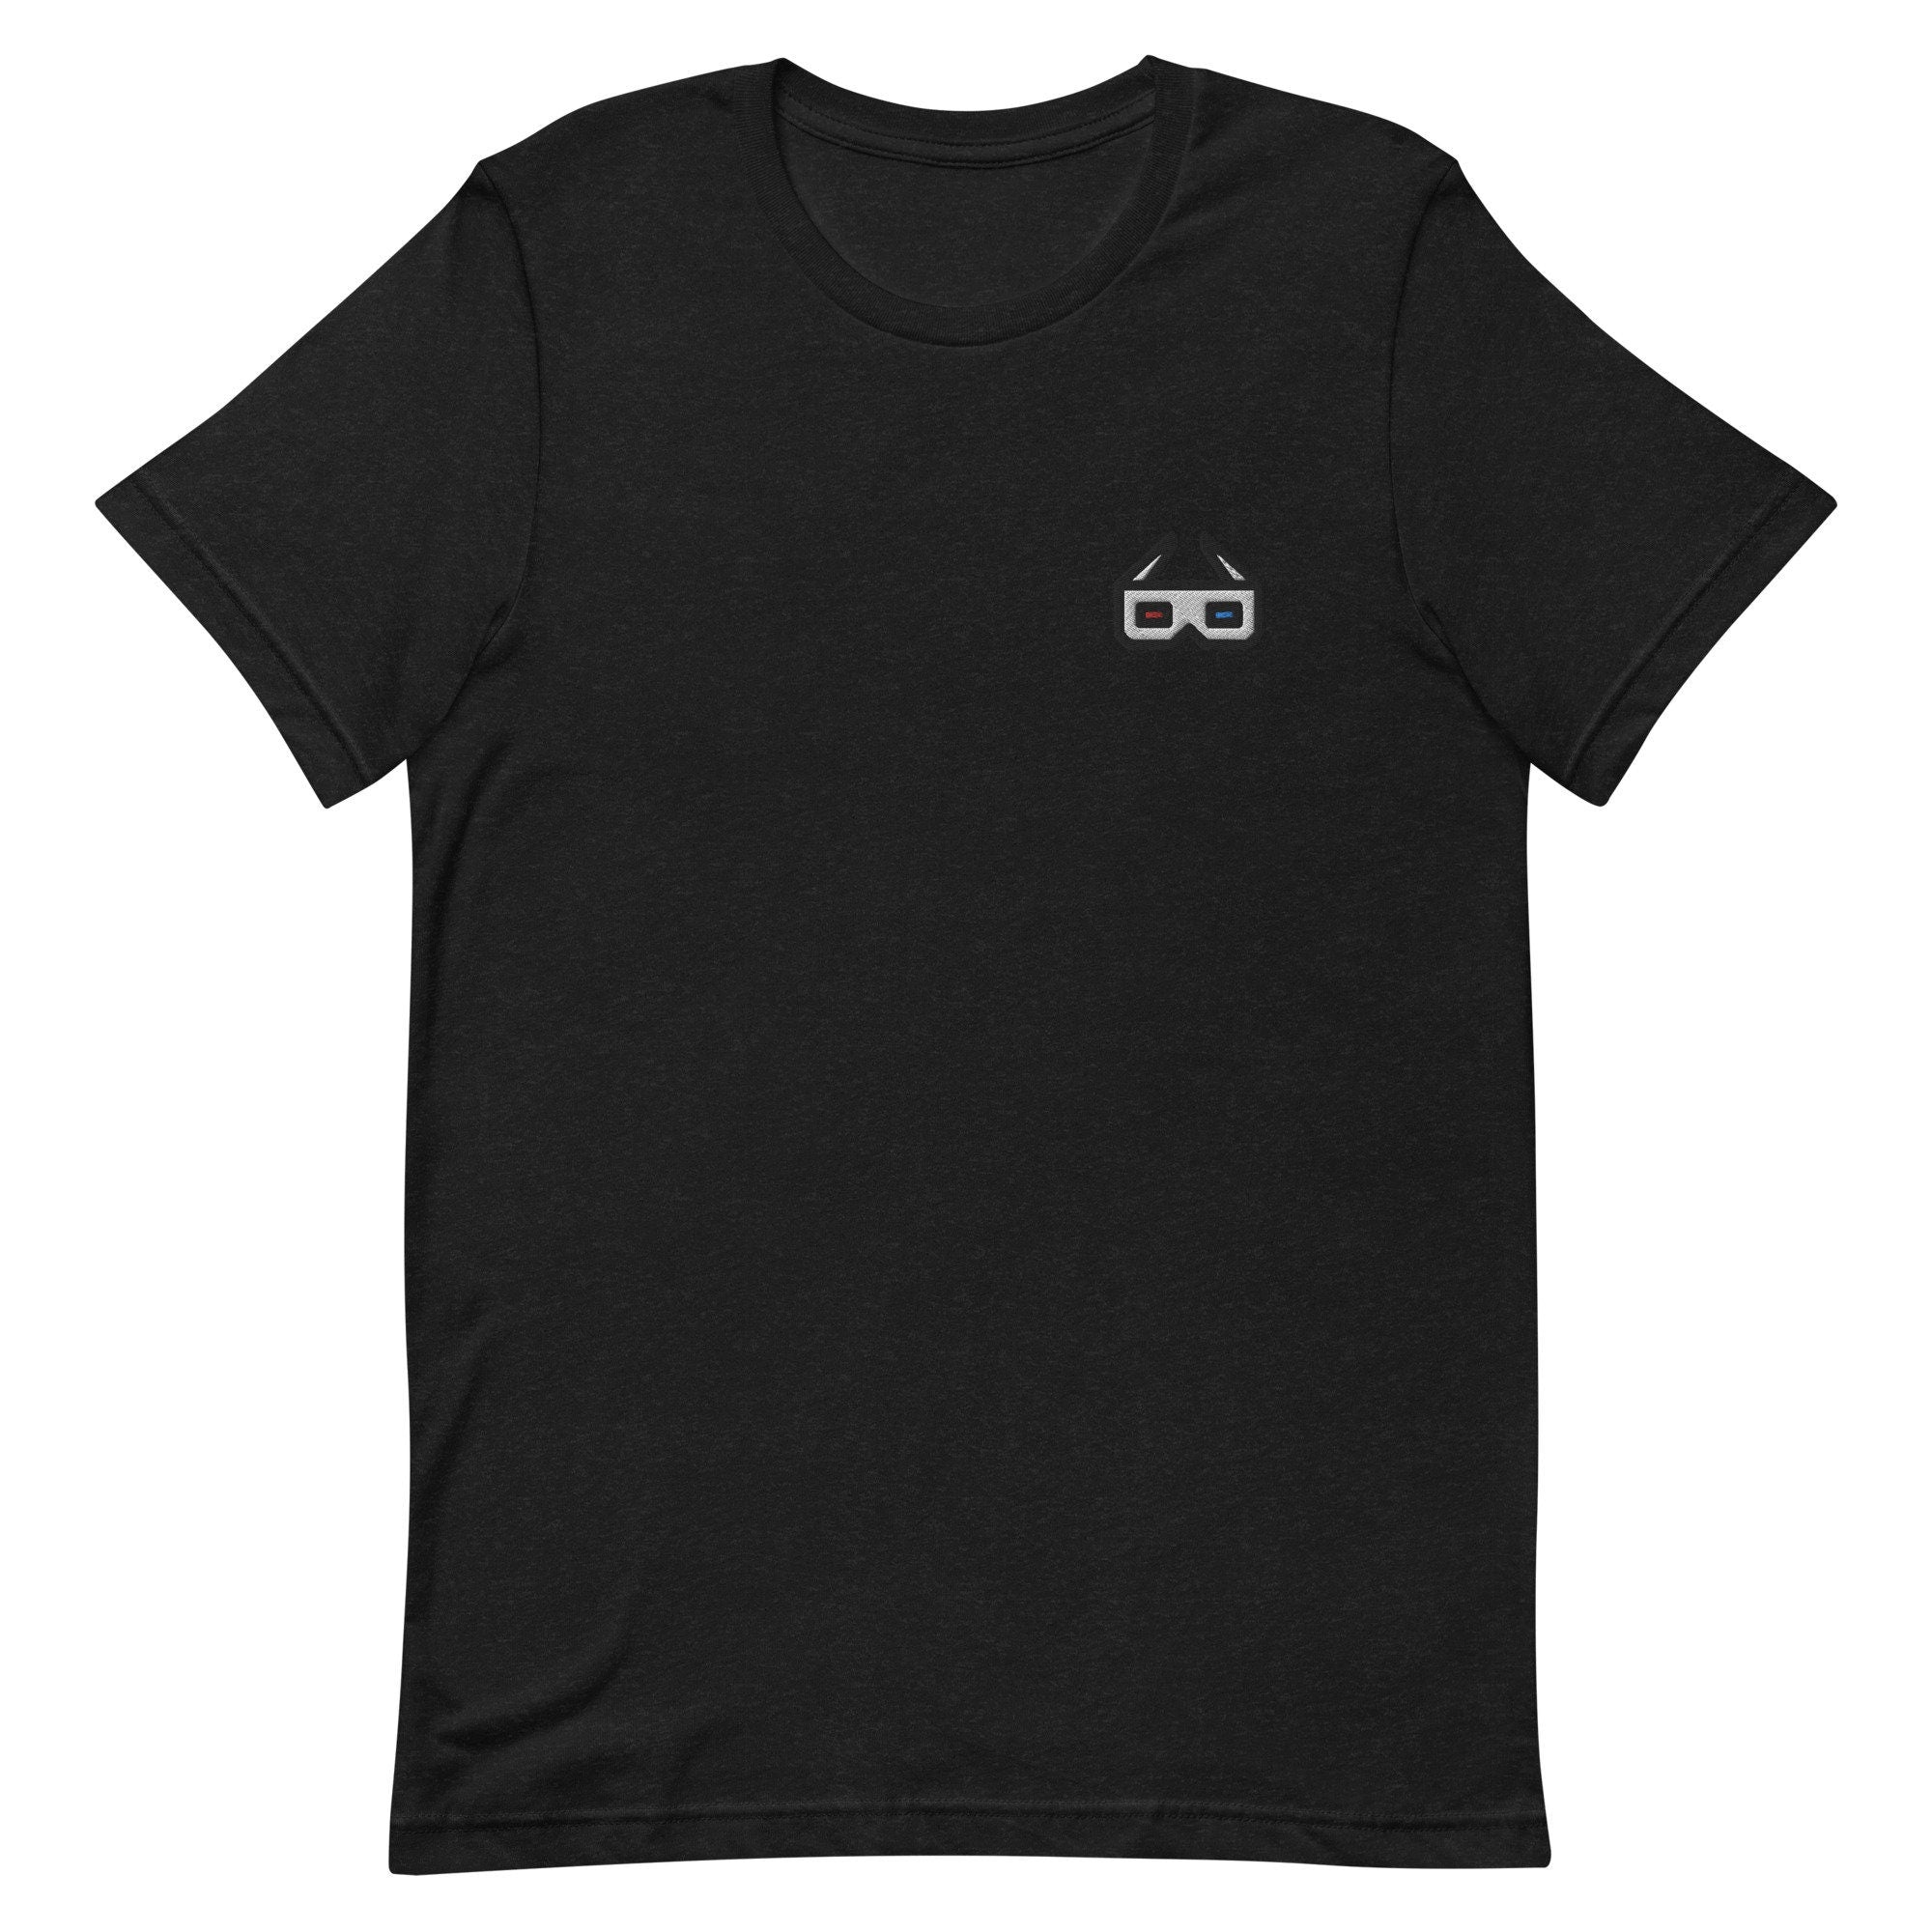 3D Glasses Premium Men's T-Shirt, Embroidered Men's T-Shirt Gift for Boyfriend, Men's Short Sleeve Shirt - Multiple Colors